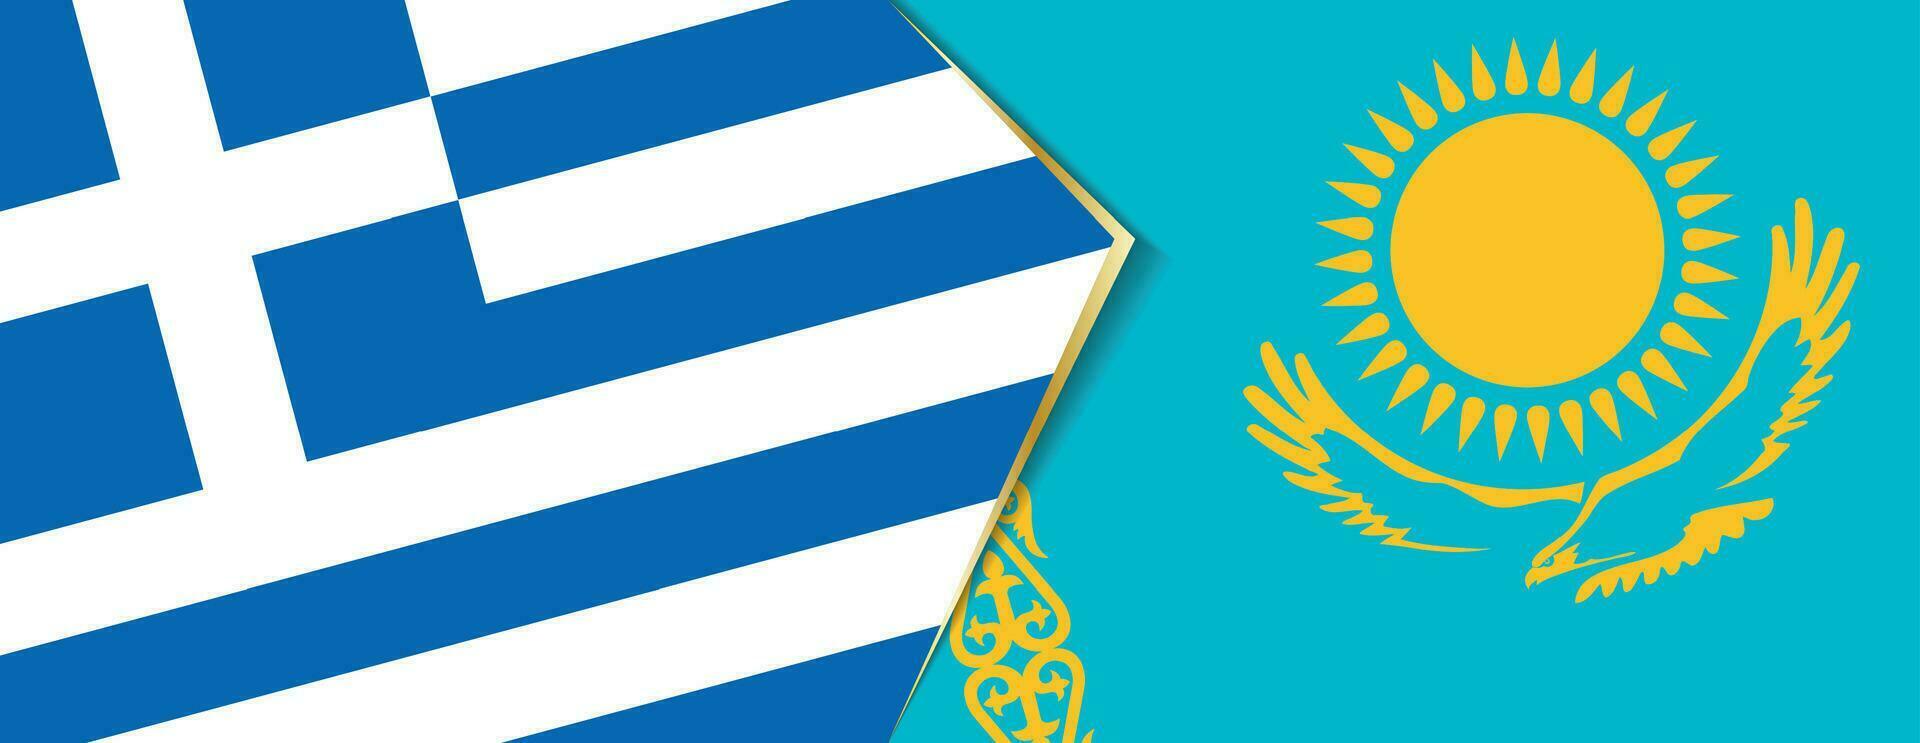 grekland och kazakhstan flaggor, två vektor flaggor.